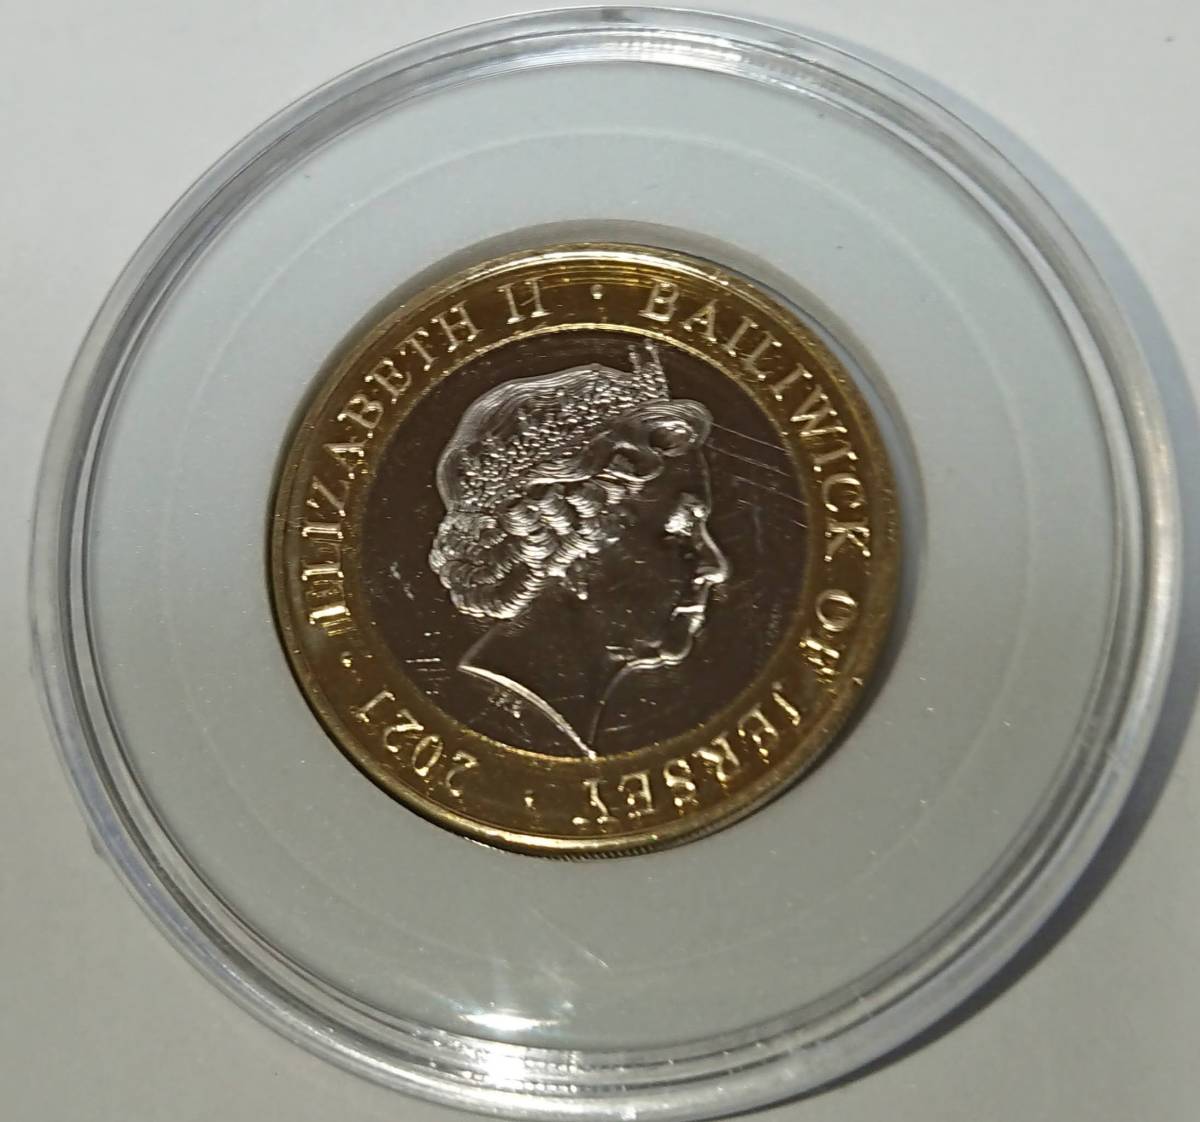 ラグビー】イングランド代表 150周年記念コイン 4枚セット「ローズ